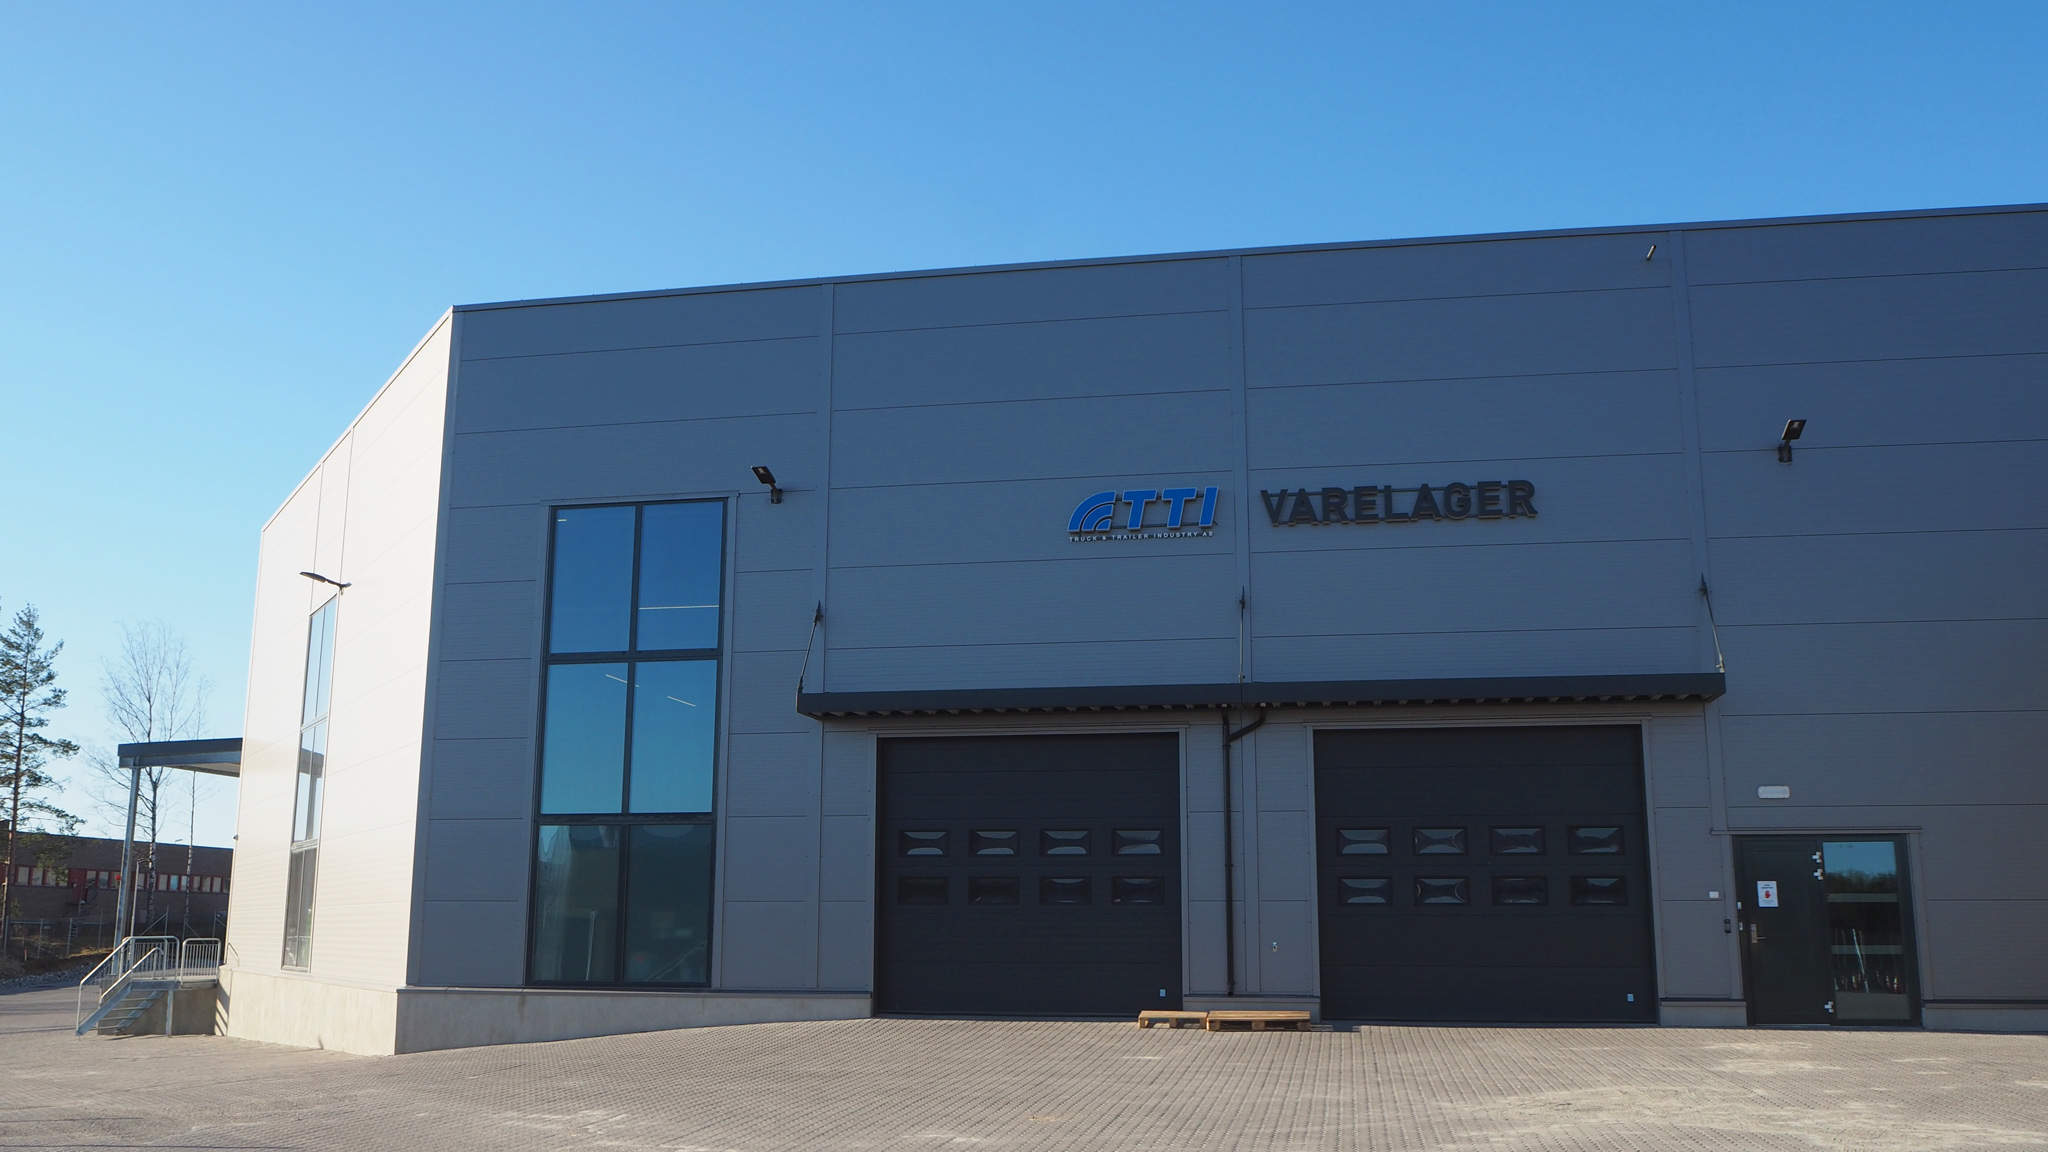 Het Noorse bedrijf TTI vertrouwt op de logistieke dienstverlening van DACHSER betreft de levering van onderdelen voor zware bedrijfsvoertuigen en aanhangwagens aan Noorwegen vanuit heel Europa.